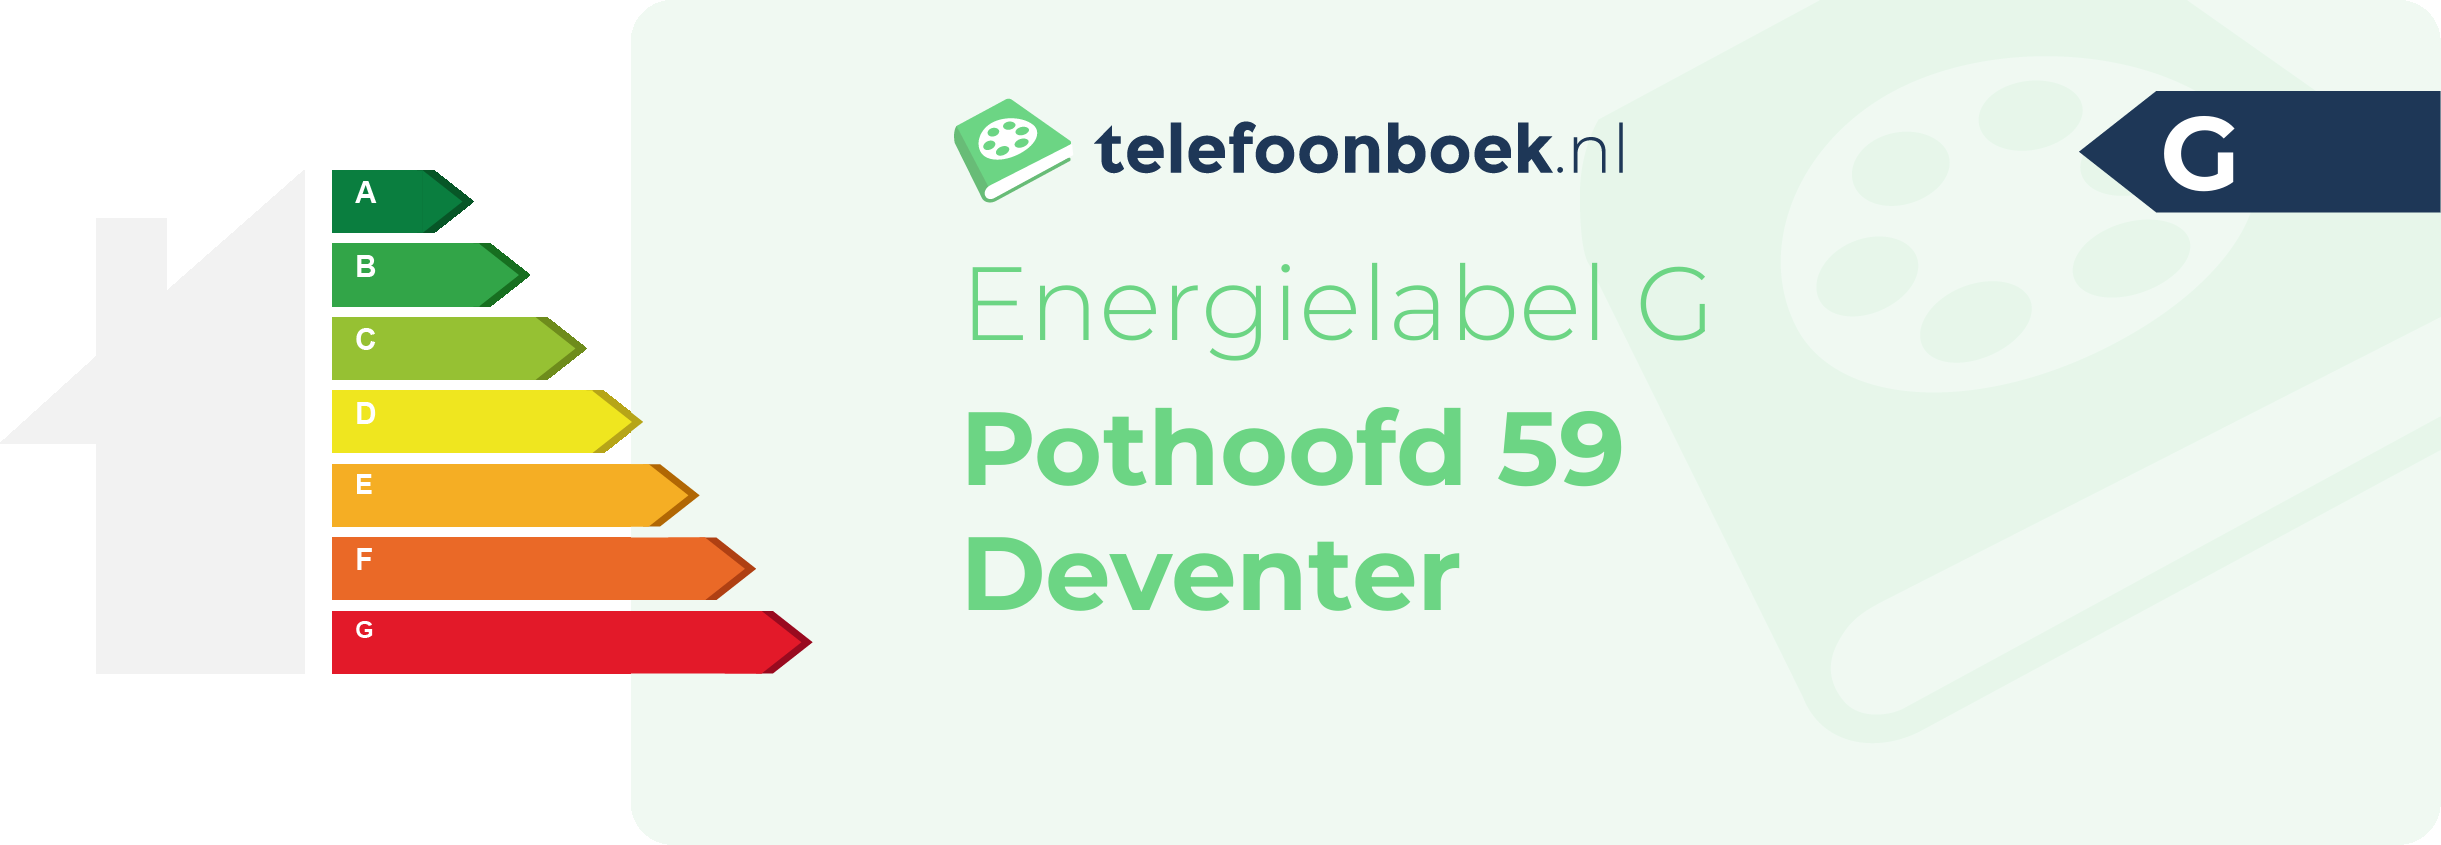 Energielabel Pothoofd 59 Deventer